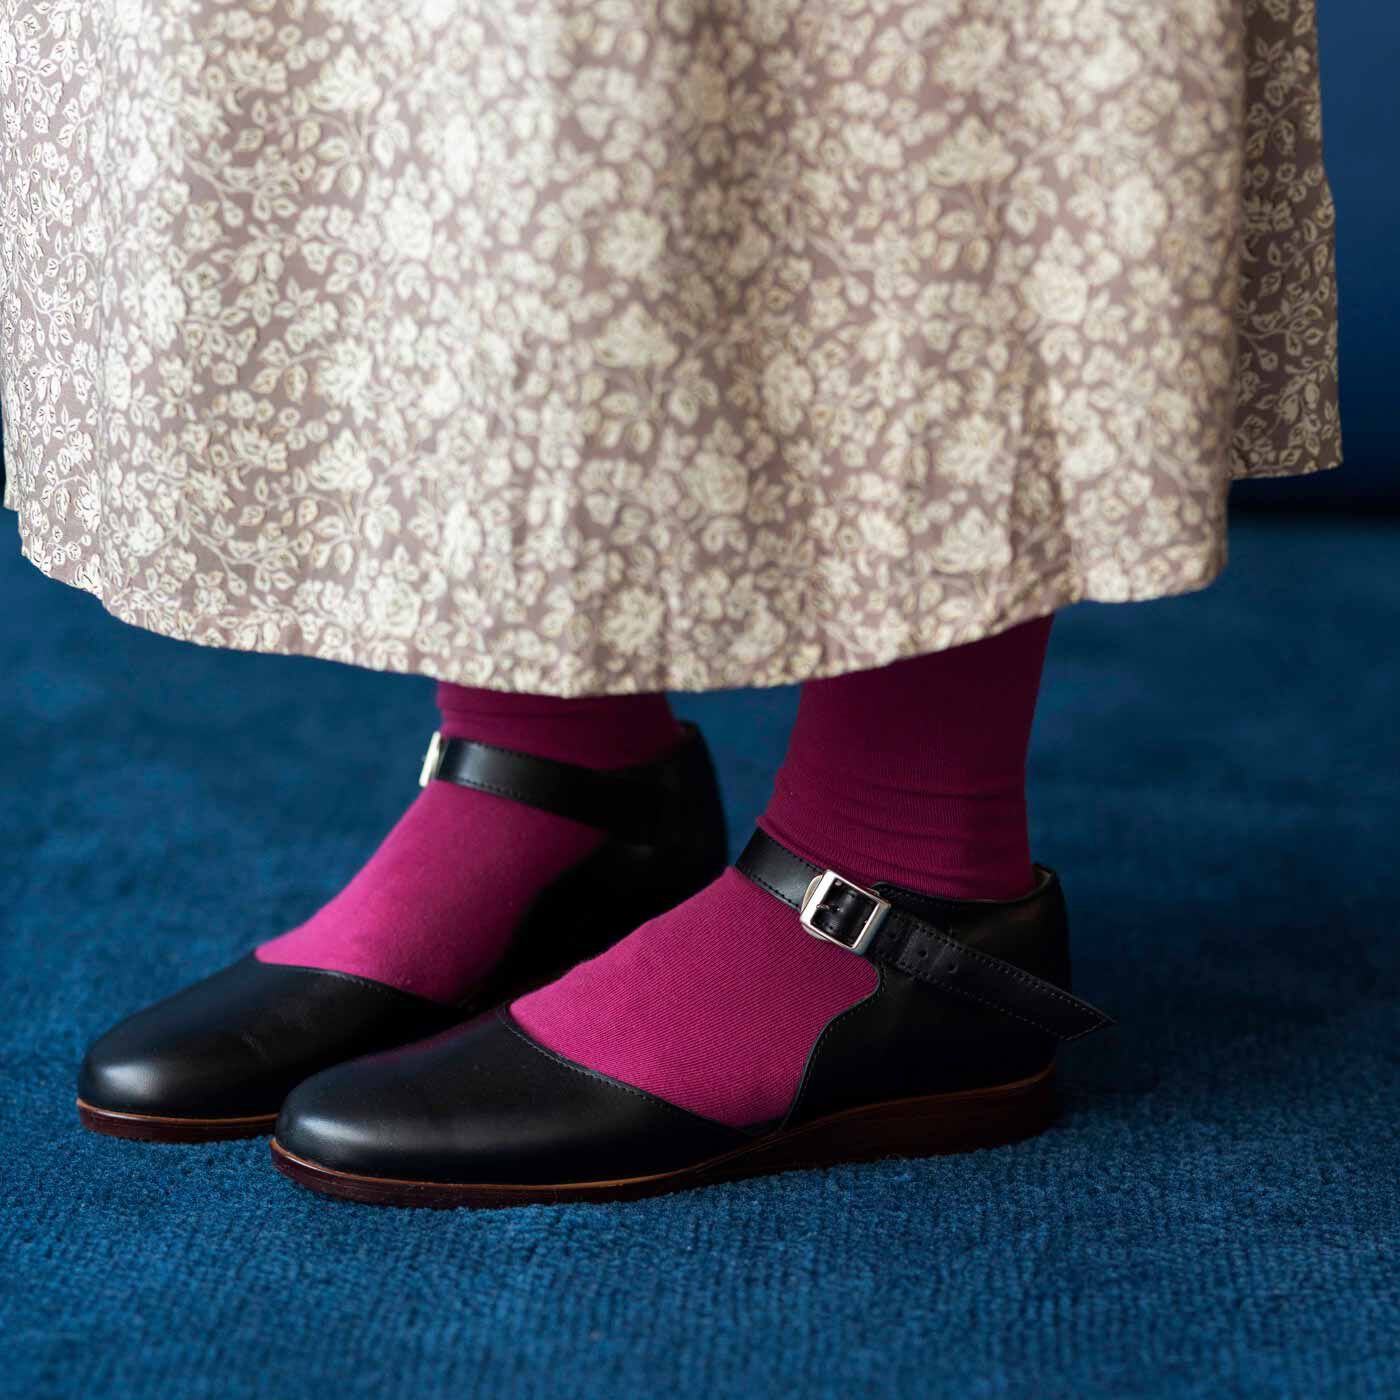 ＆Stories|長田靴職人が叶えた 本革ストラップトウシューズ〈ブラックキャット〉[本革 靴：日本製]|つま先をカバーし、かかとを包む安心感のあるデザイン。